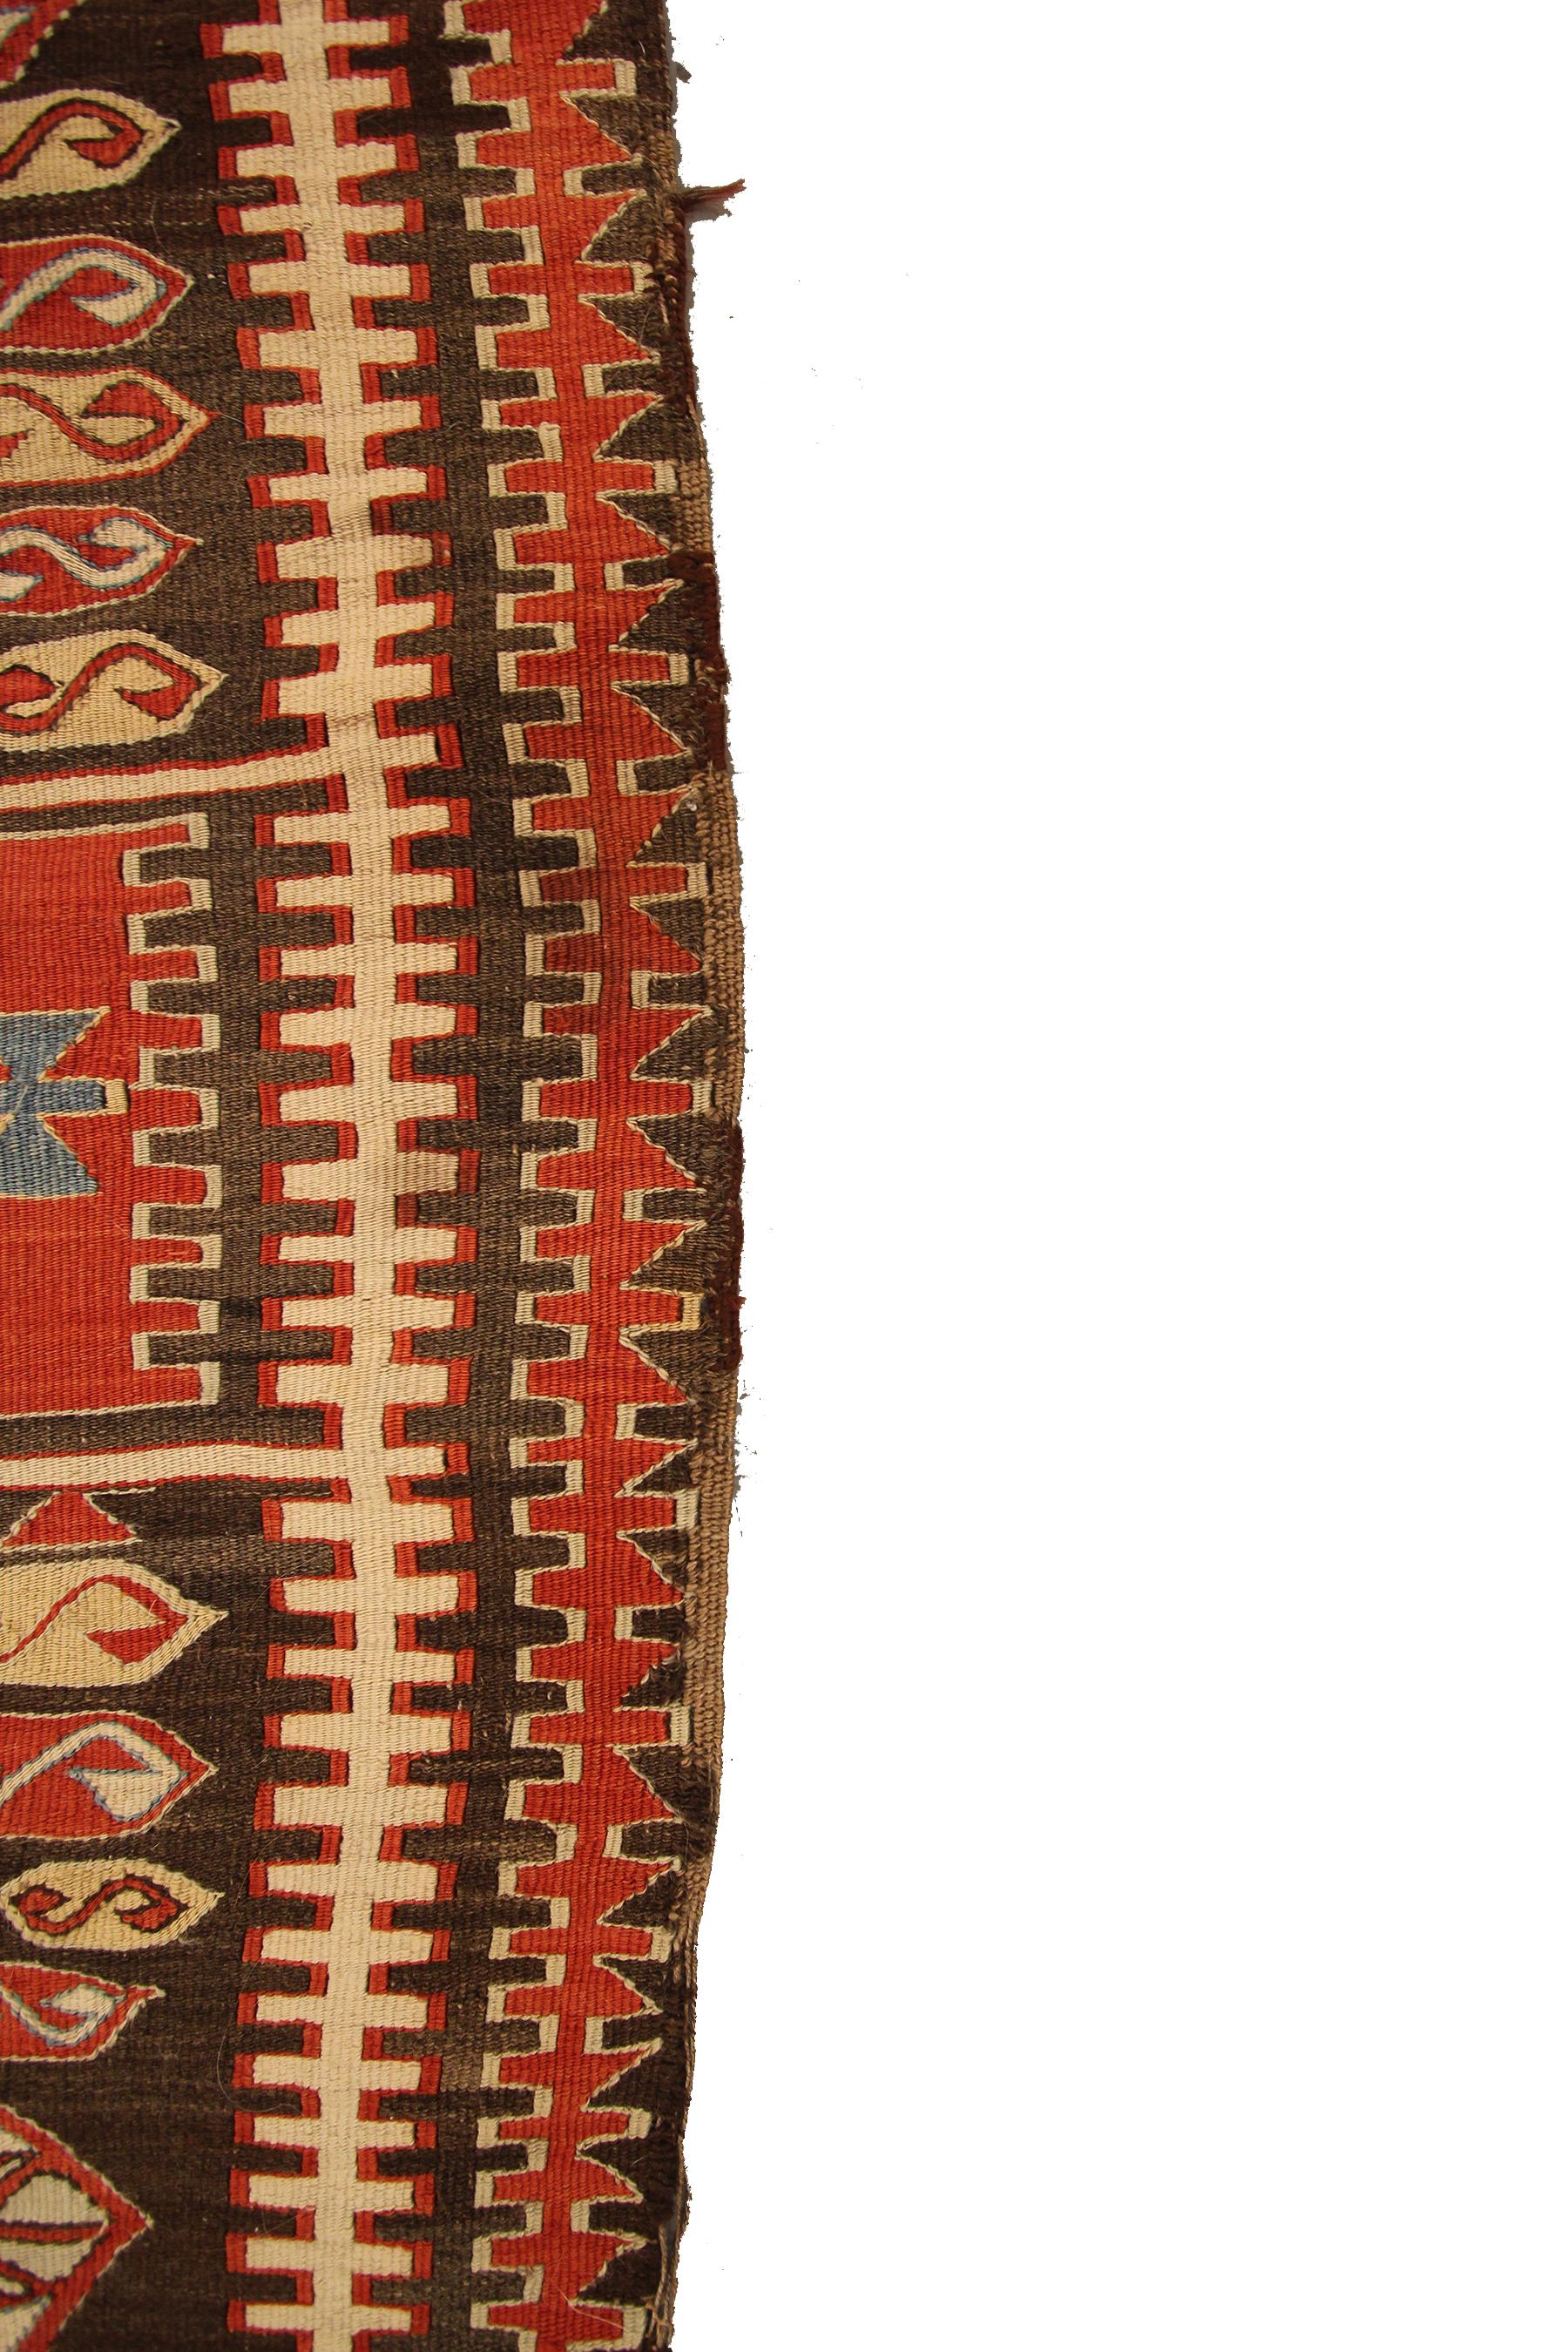 Antique Caucasian Kilim Caucasian Kazak Flatwoven Square Tapestry 2